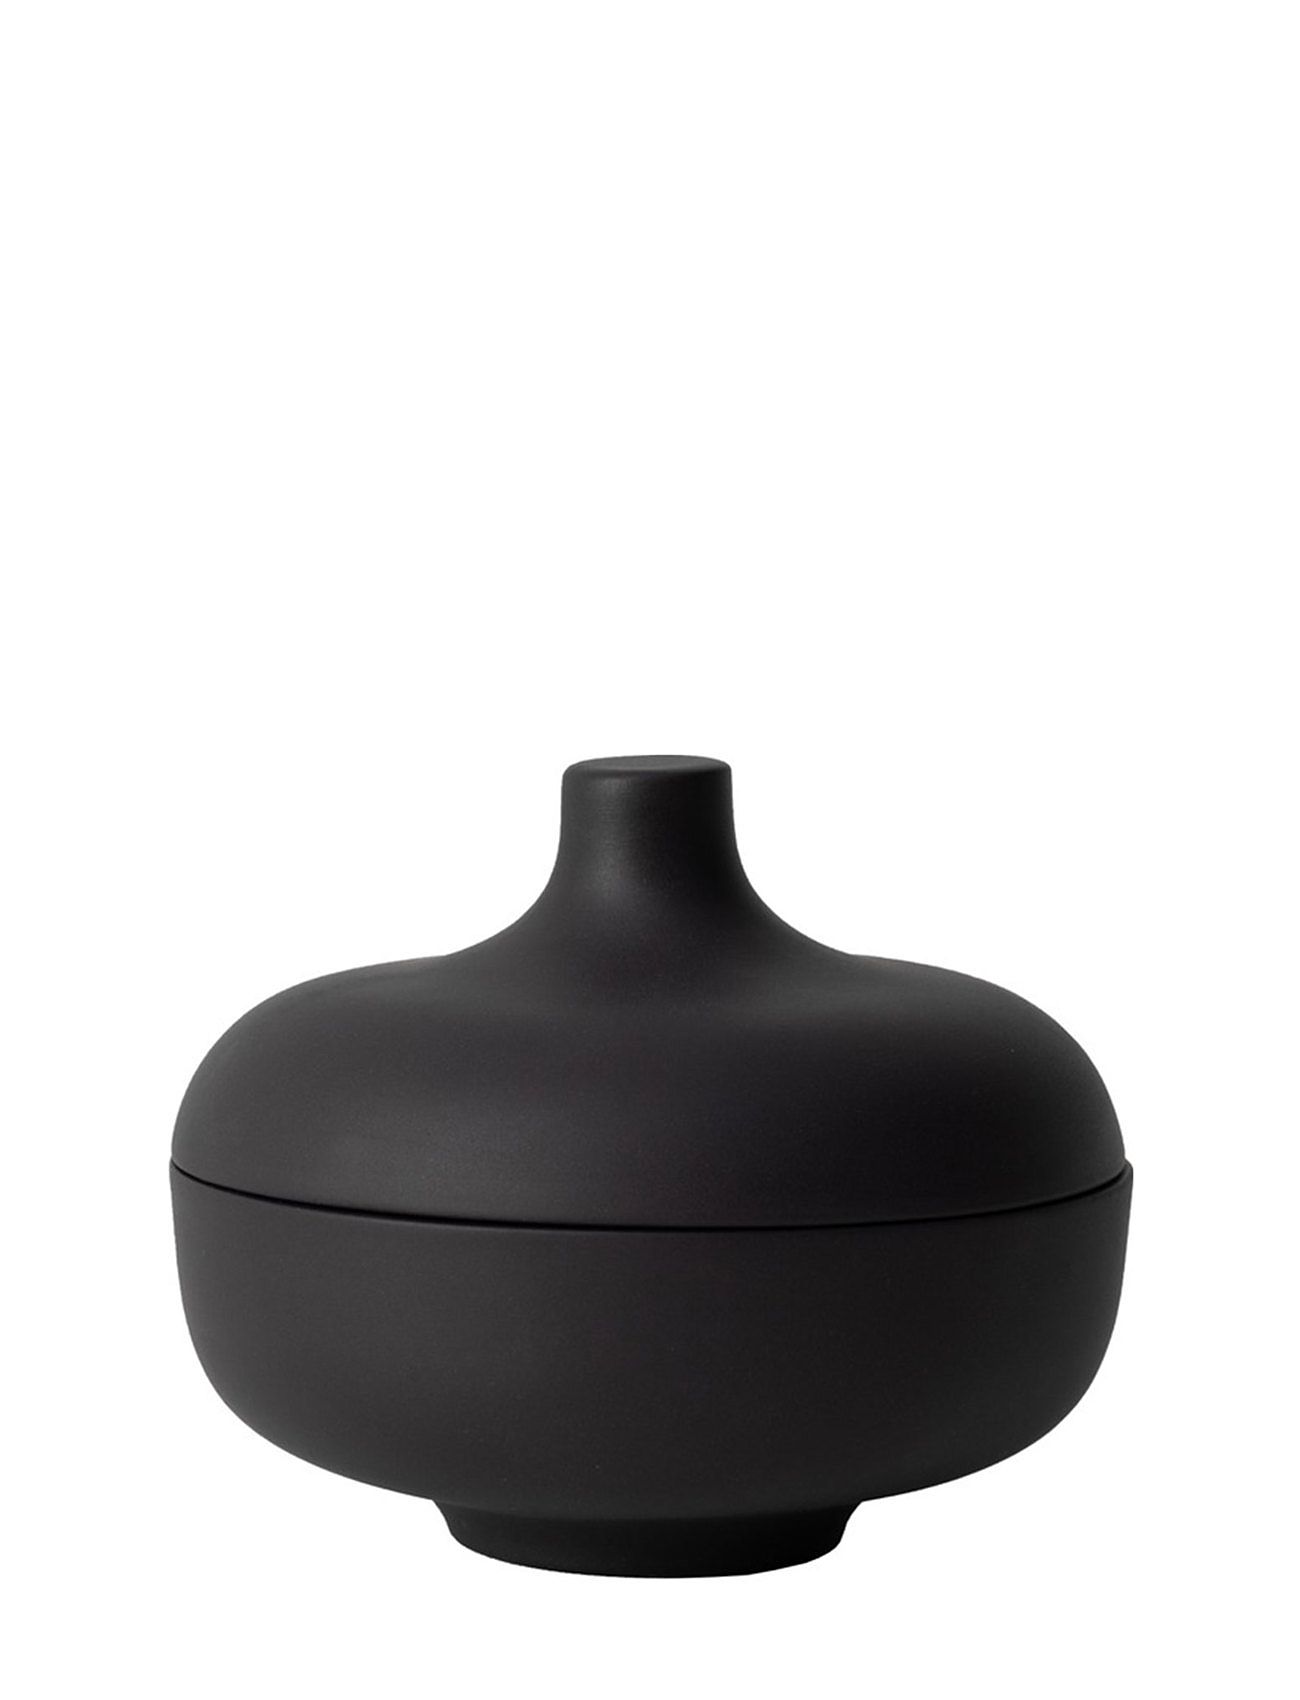 Sand Medium Bowl W Lid Home Tableware Bowls & Serving Dishes Serving Bowls Black Design House Stockholm